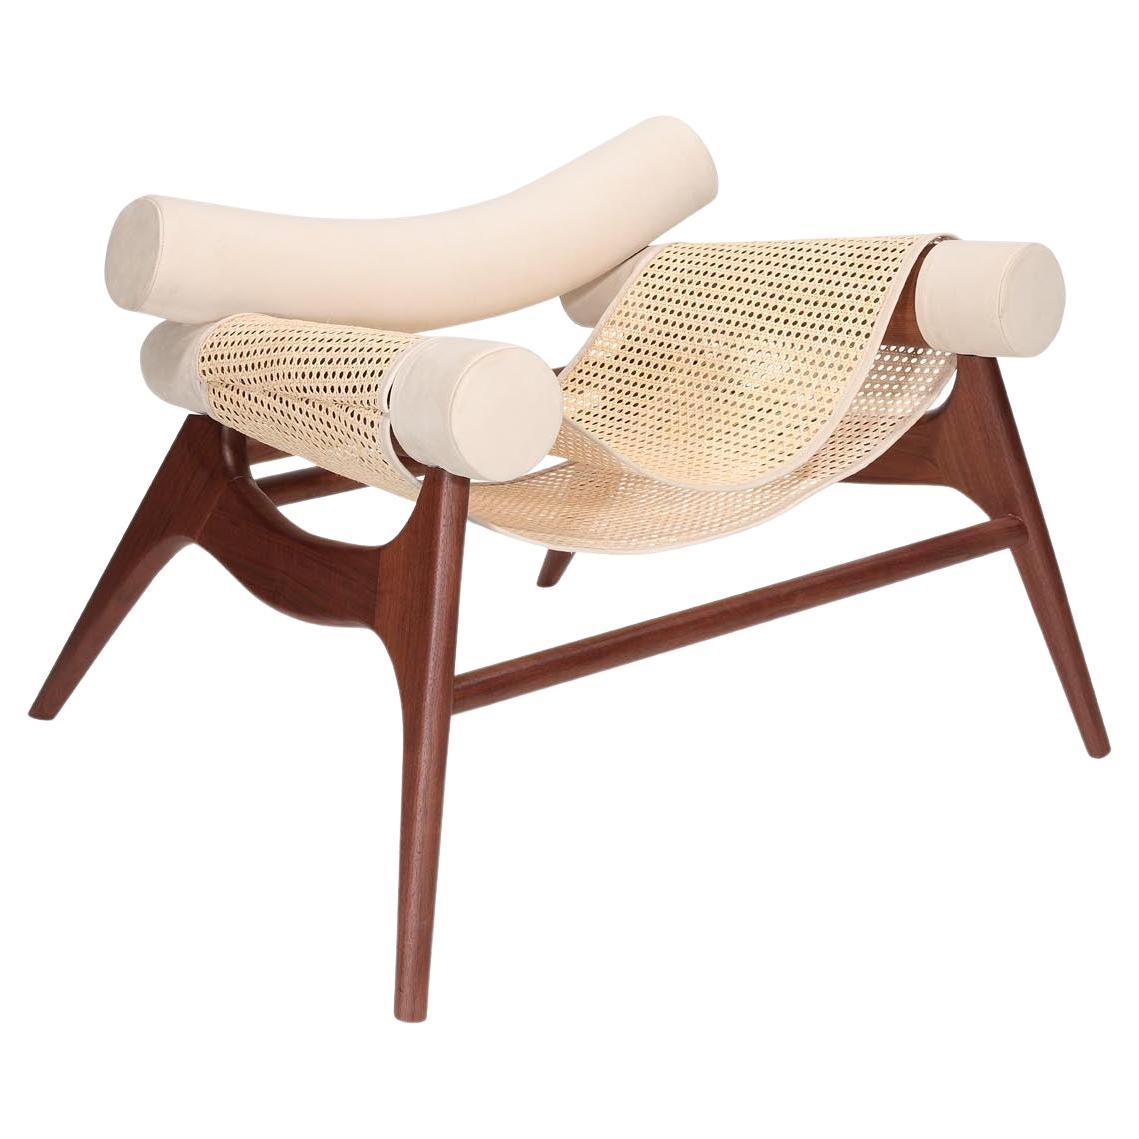 Wonatti Espiunca Armchair, Walnut Wood Armchair, Leather Armchair, Rattan Chair For Sale